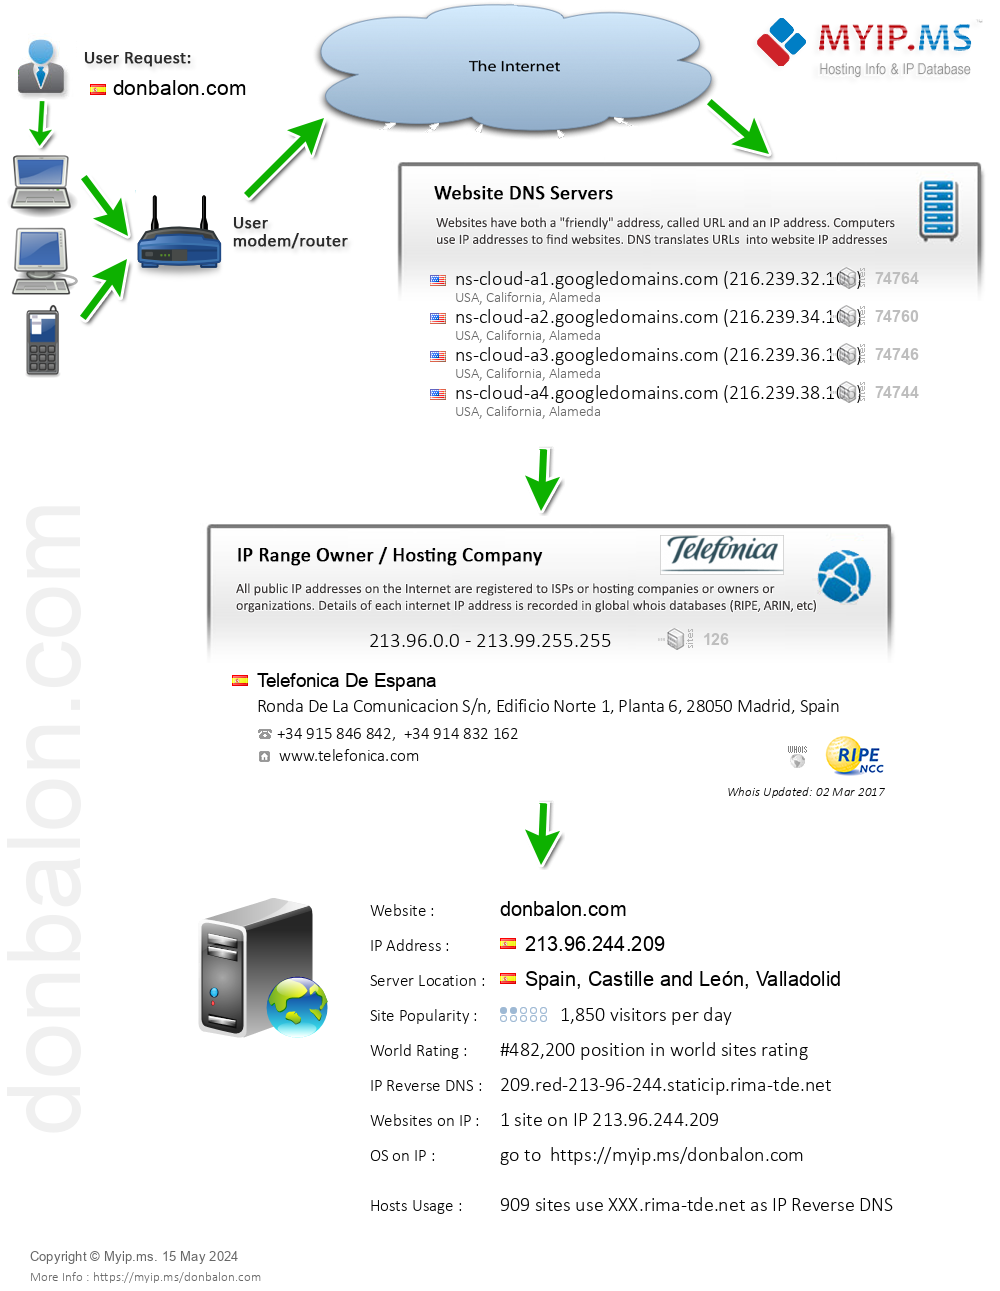 Donbalon.com - Website Hosting Visual IP Diagram